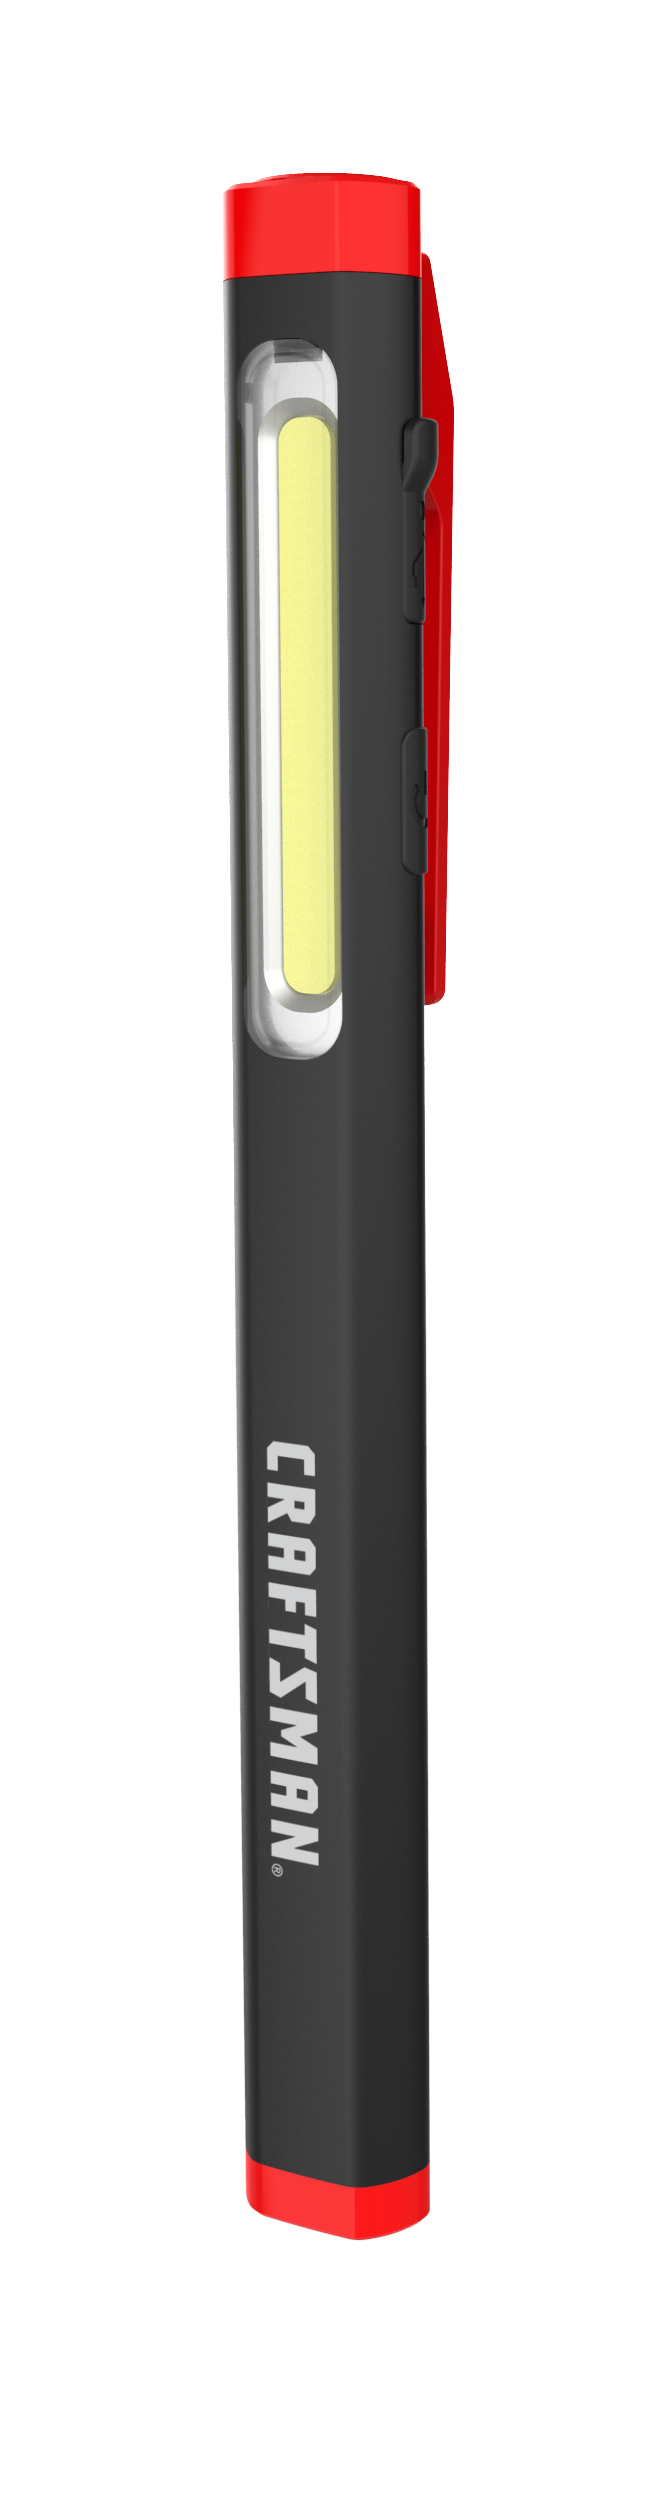 Light Up Pens - Lighted 8 Mode LED Pen